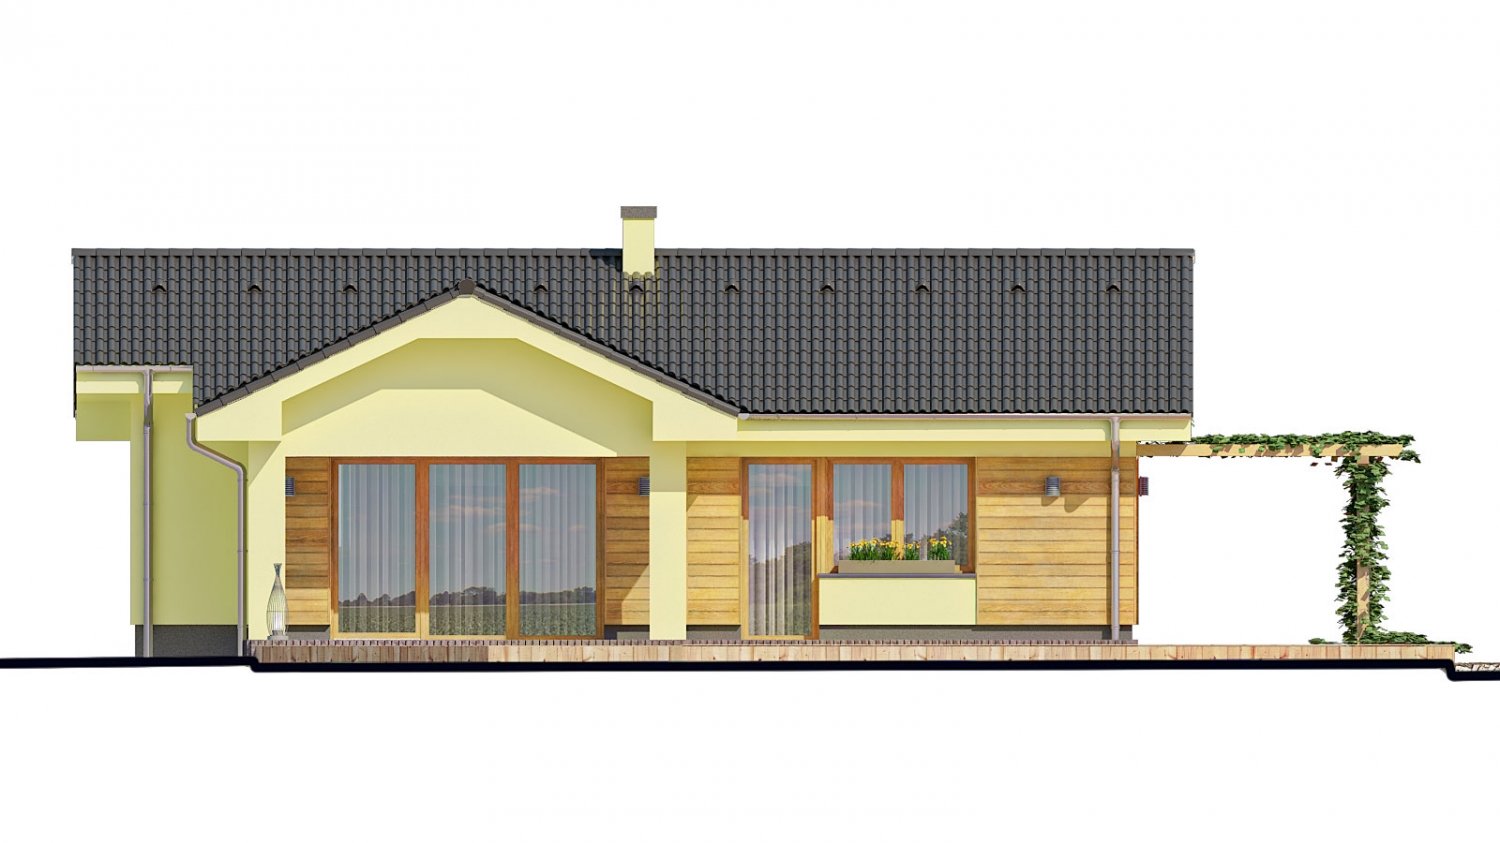 Zrkadlový pohľad 3. - Malý dům s terasou. Může být realizován jako dvojdům s projektem v zrcadlovém obraze.